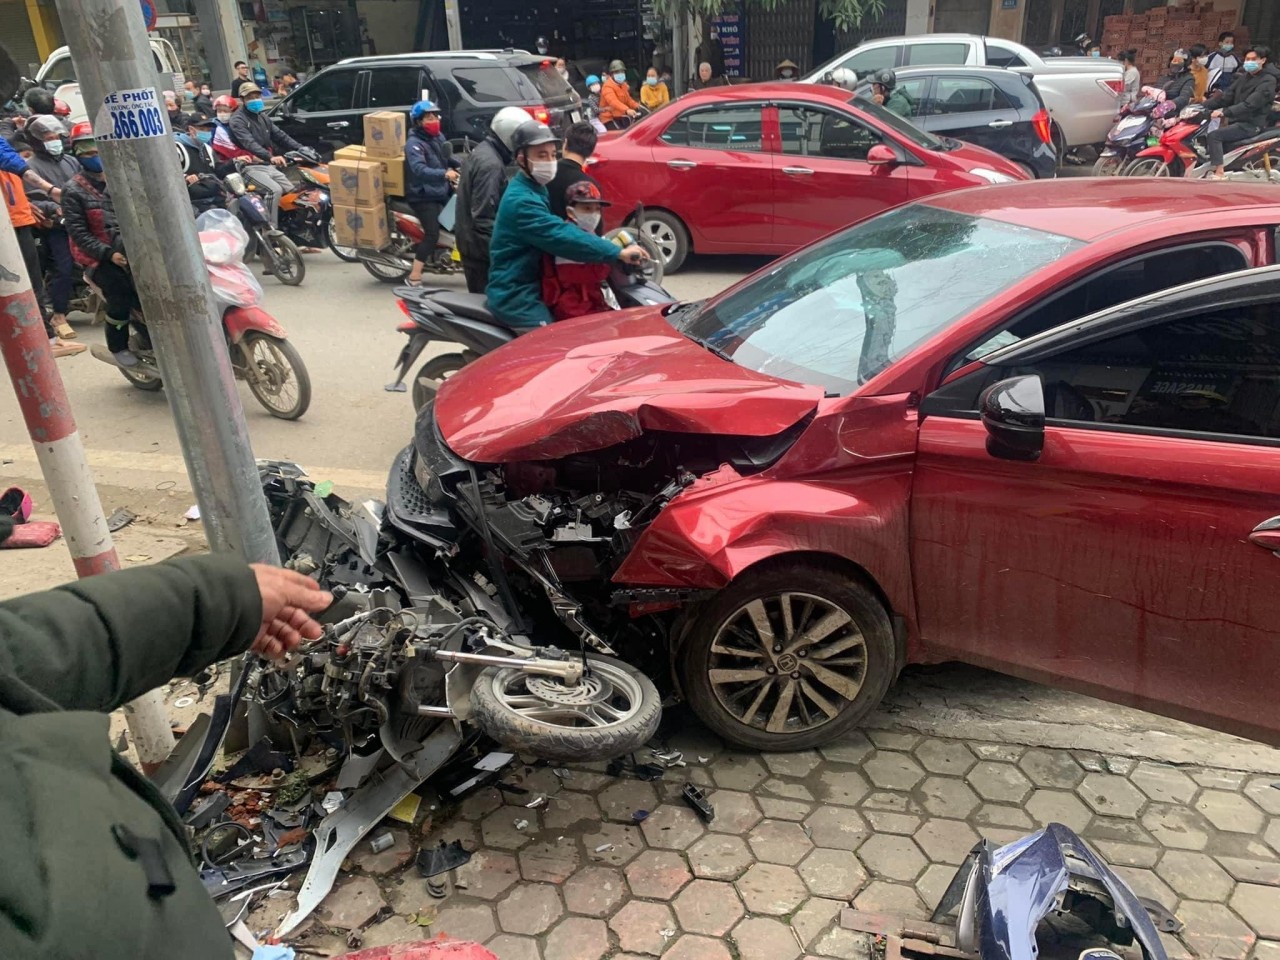 Hiện trường vụ xe ô tô mất lái húc bay người đi xe máy ở Lào Cai